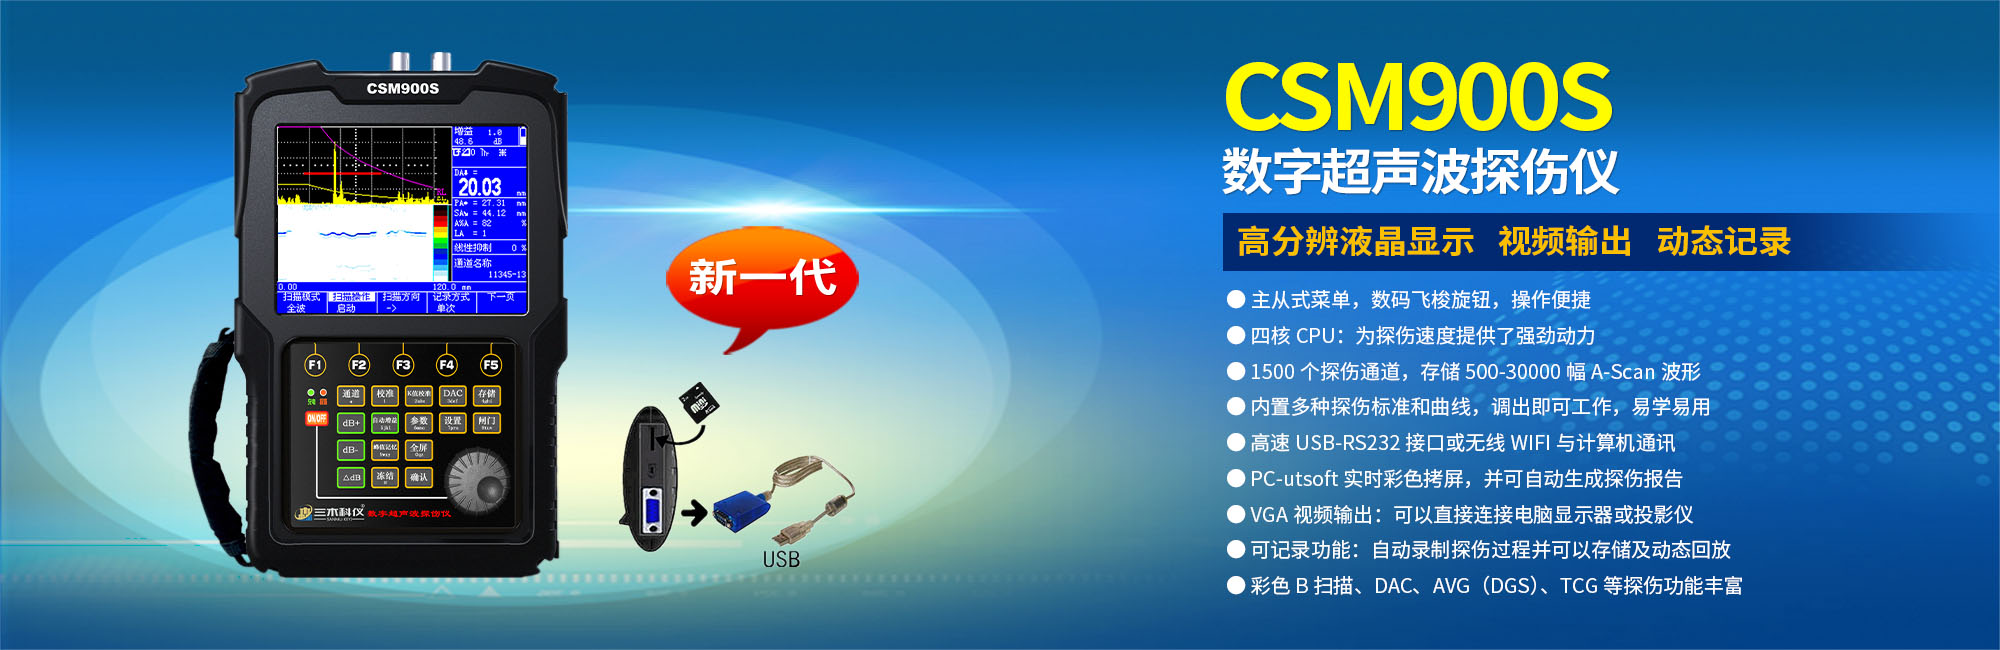 CSM900S型數字超聲波探傷儀（高端智能型）